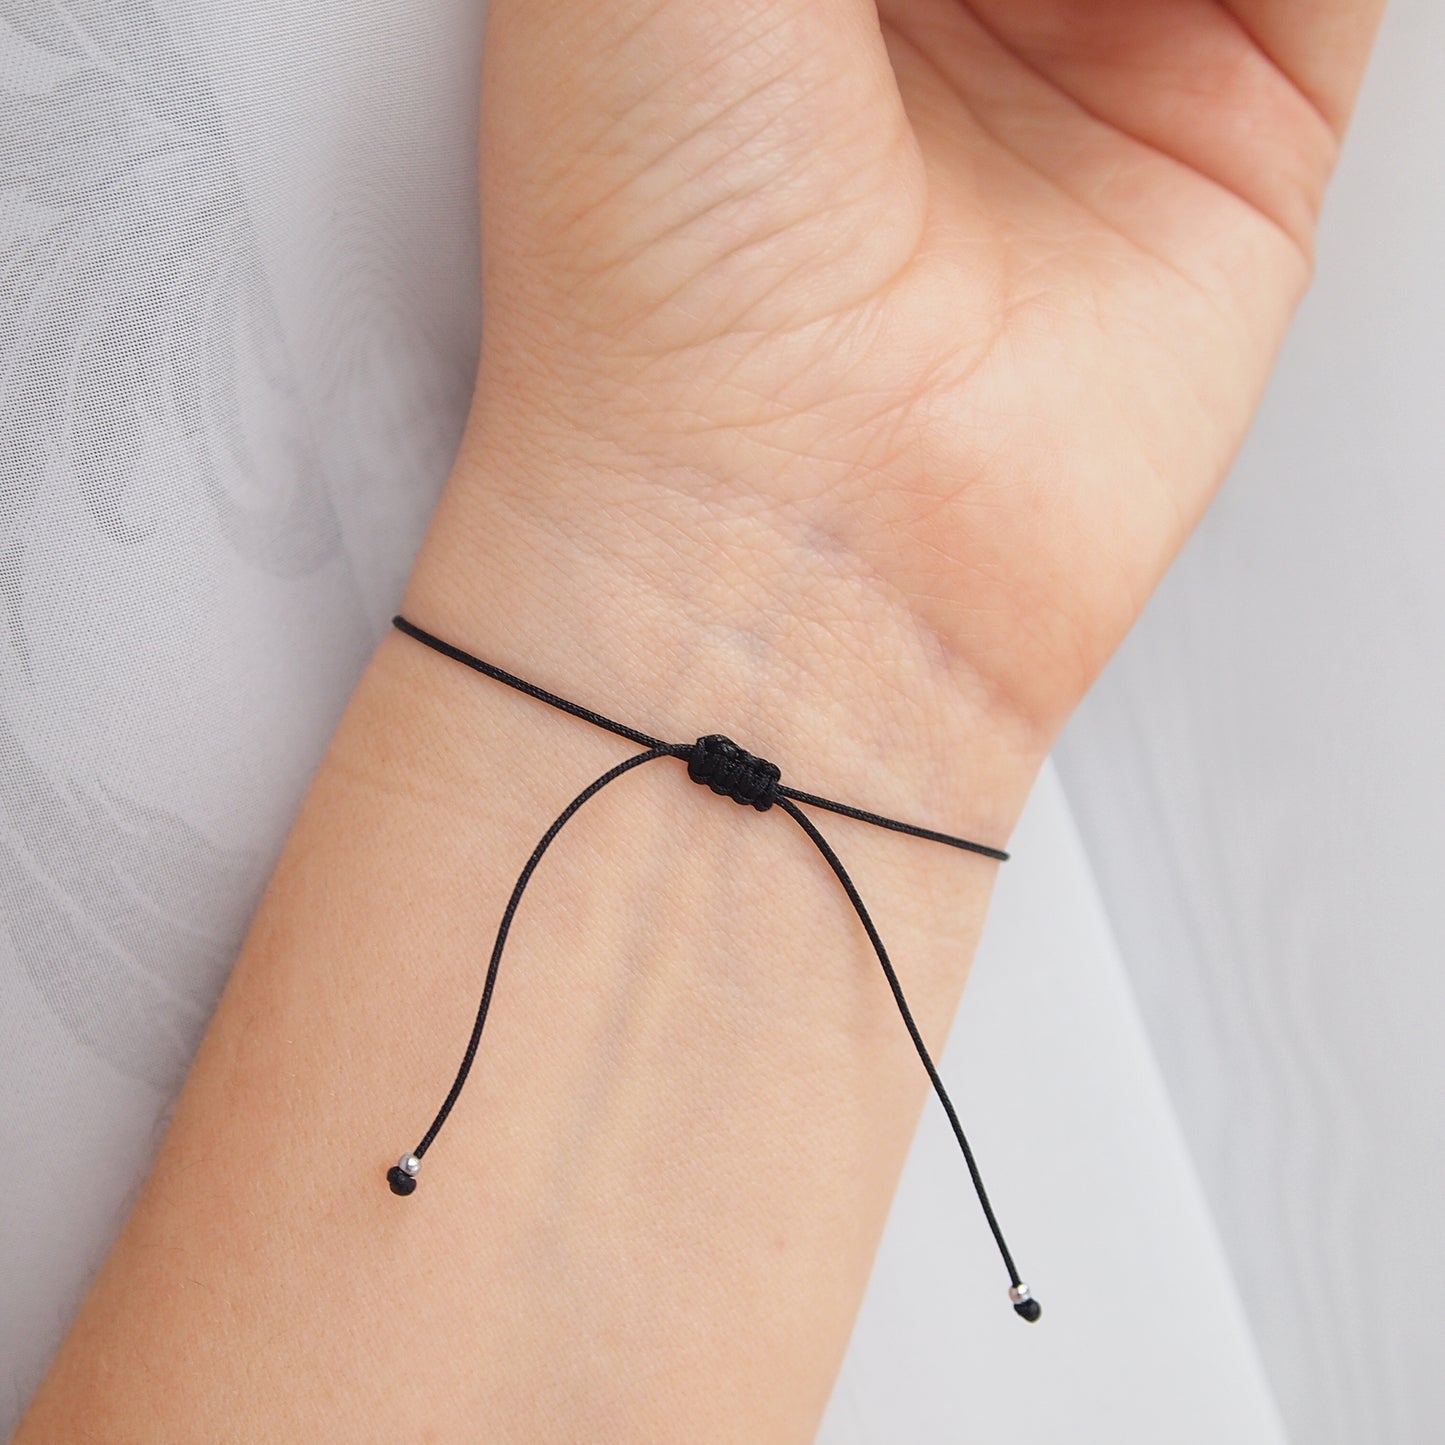 Custom morse code bracelet in black